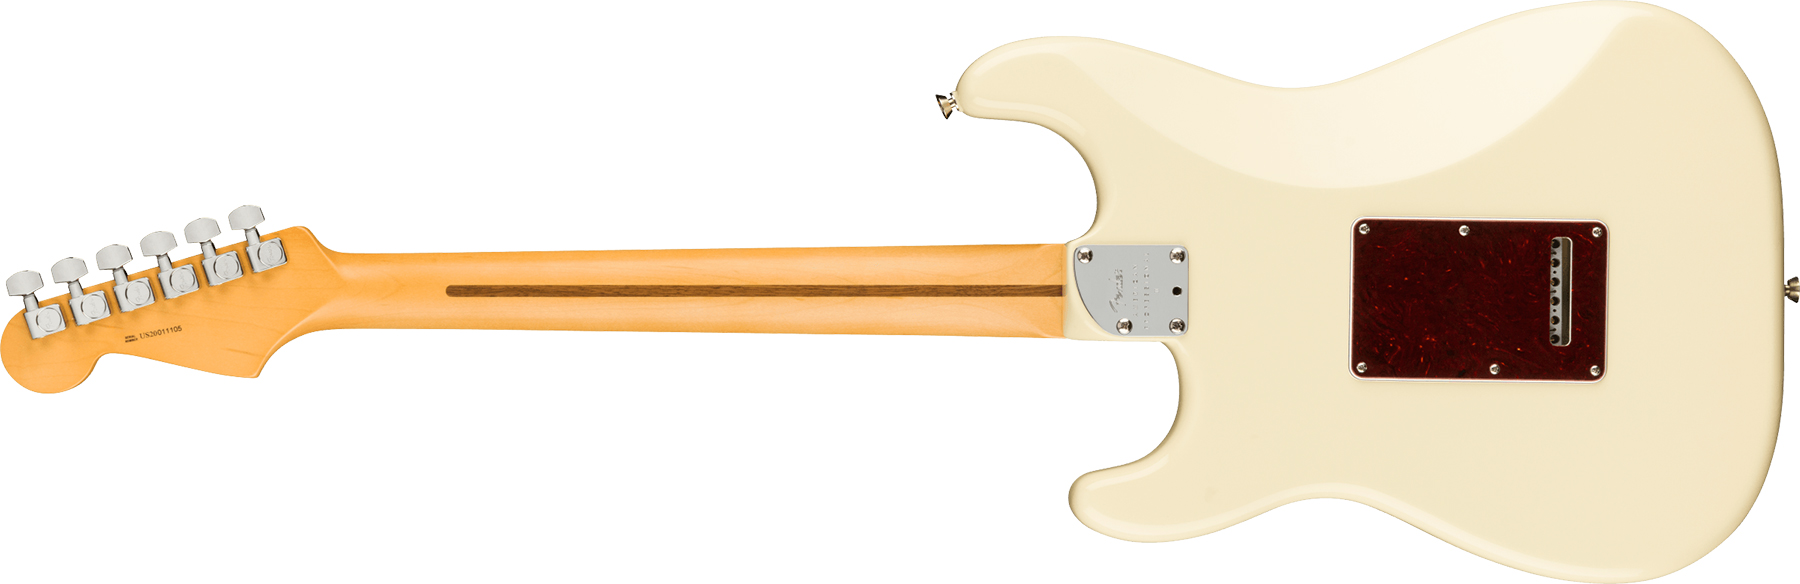 Fender Strat American Professional Ii Hss Usa Rw - Olympic White - Elektrische gitaar in Str-vorm - Variation 1